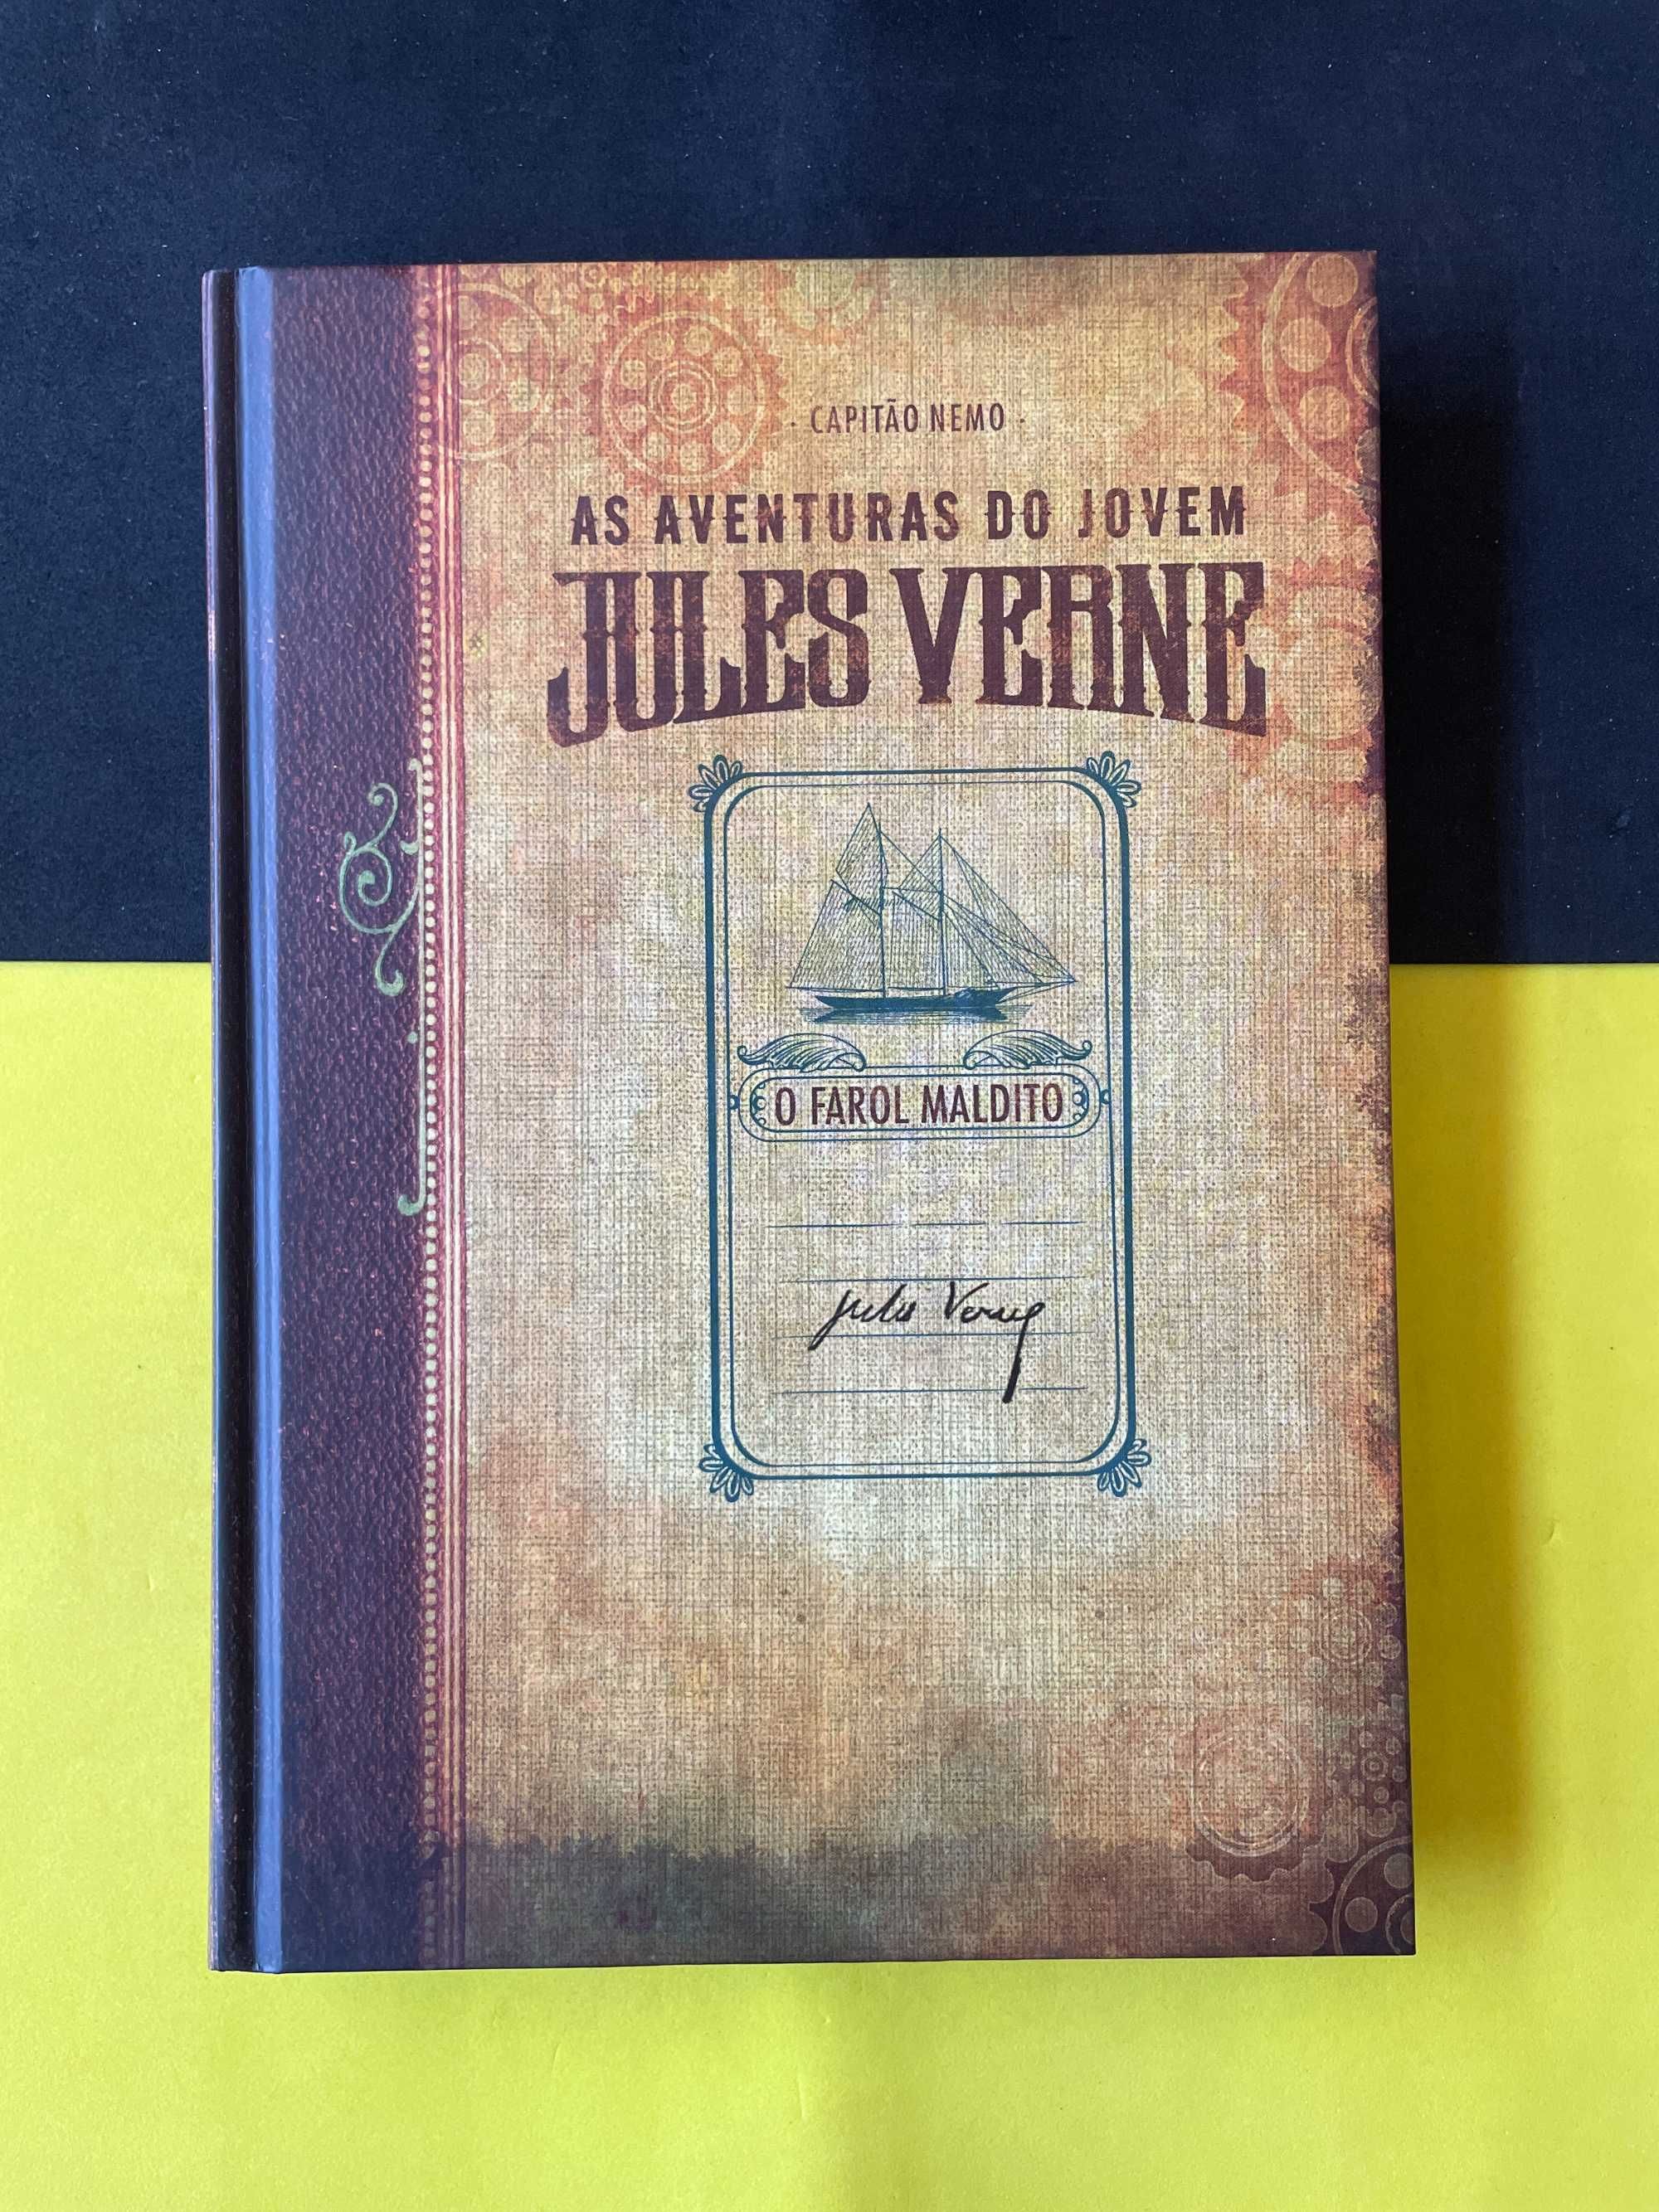 Capitão Nemo - As Aventuras do Jovem Jules Verne: O Farol Maldito